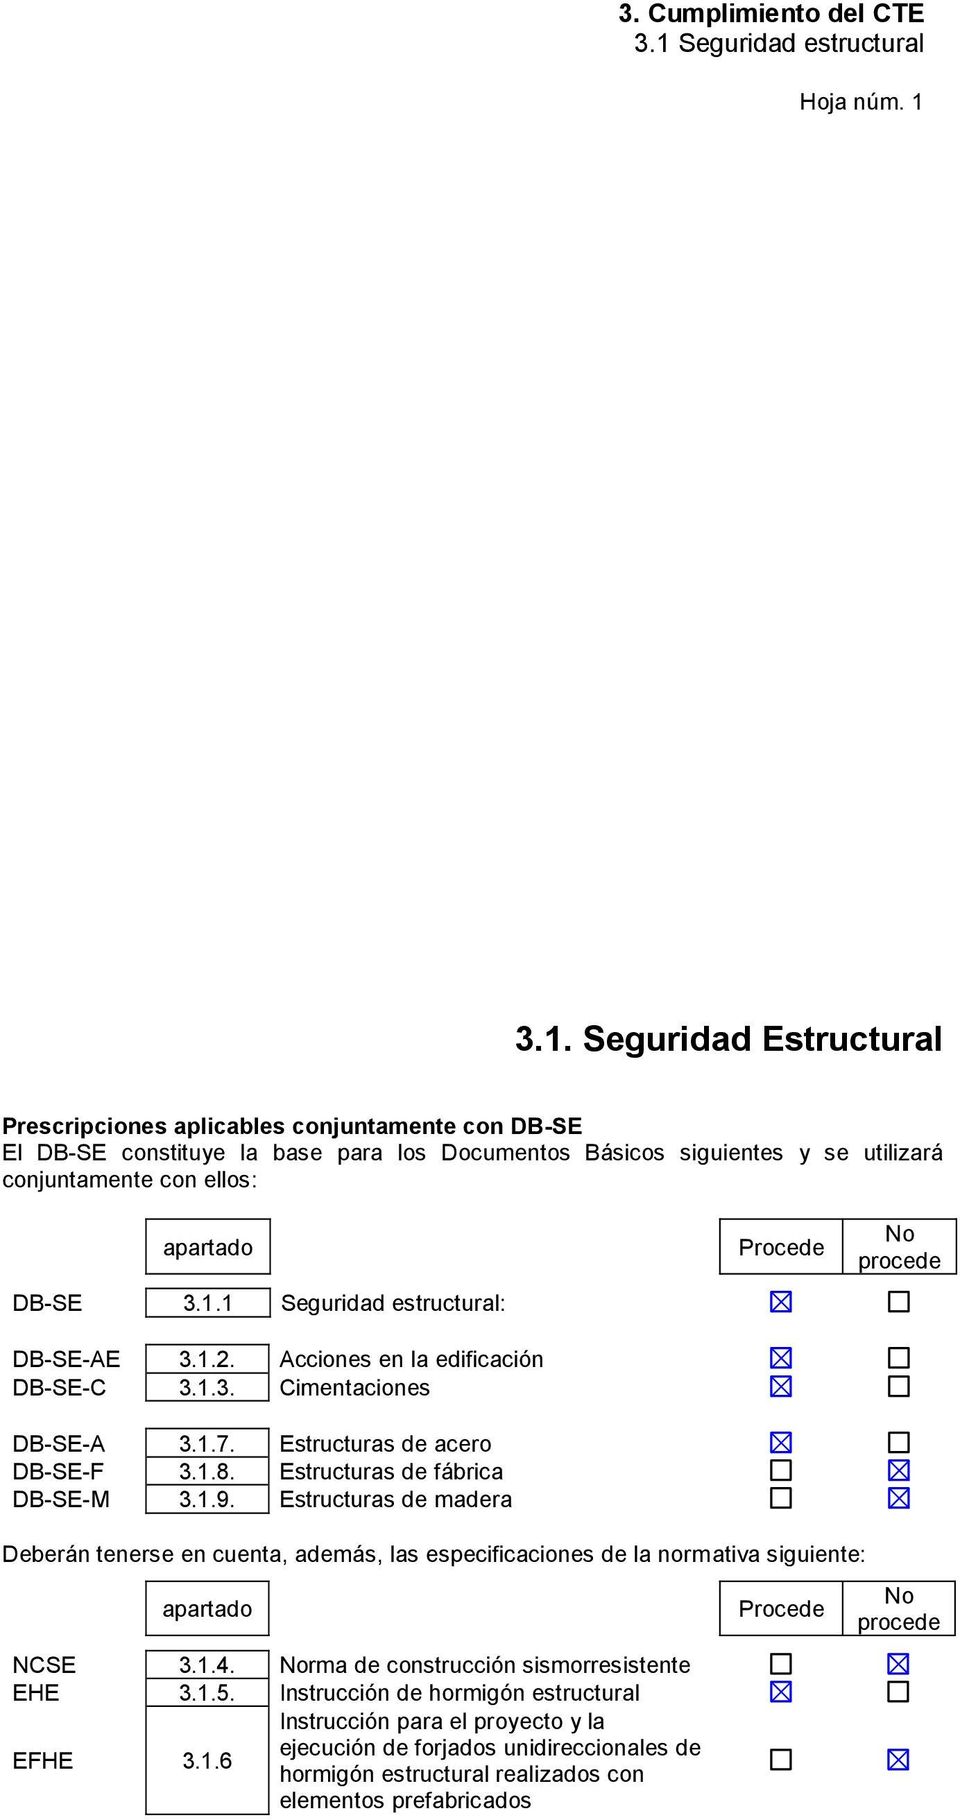 3.1.1 Seguridad estructural: DB-SE-AE 3.1.2. Acciones en la edificación DB-SE-C 3.1.3. Cimentaciones DB-SE-A 3.1.7. Estructuras de acero DB-SE-F 3.1.8. Estructuras de fábrica DB-SE-M 3.1.9.